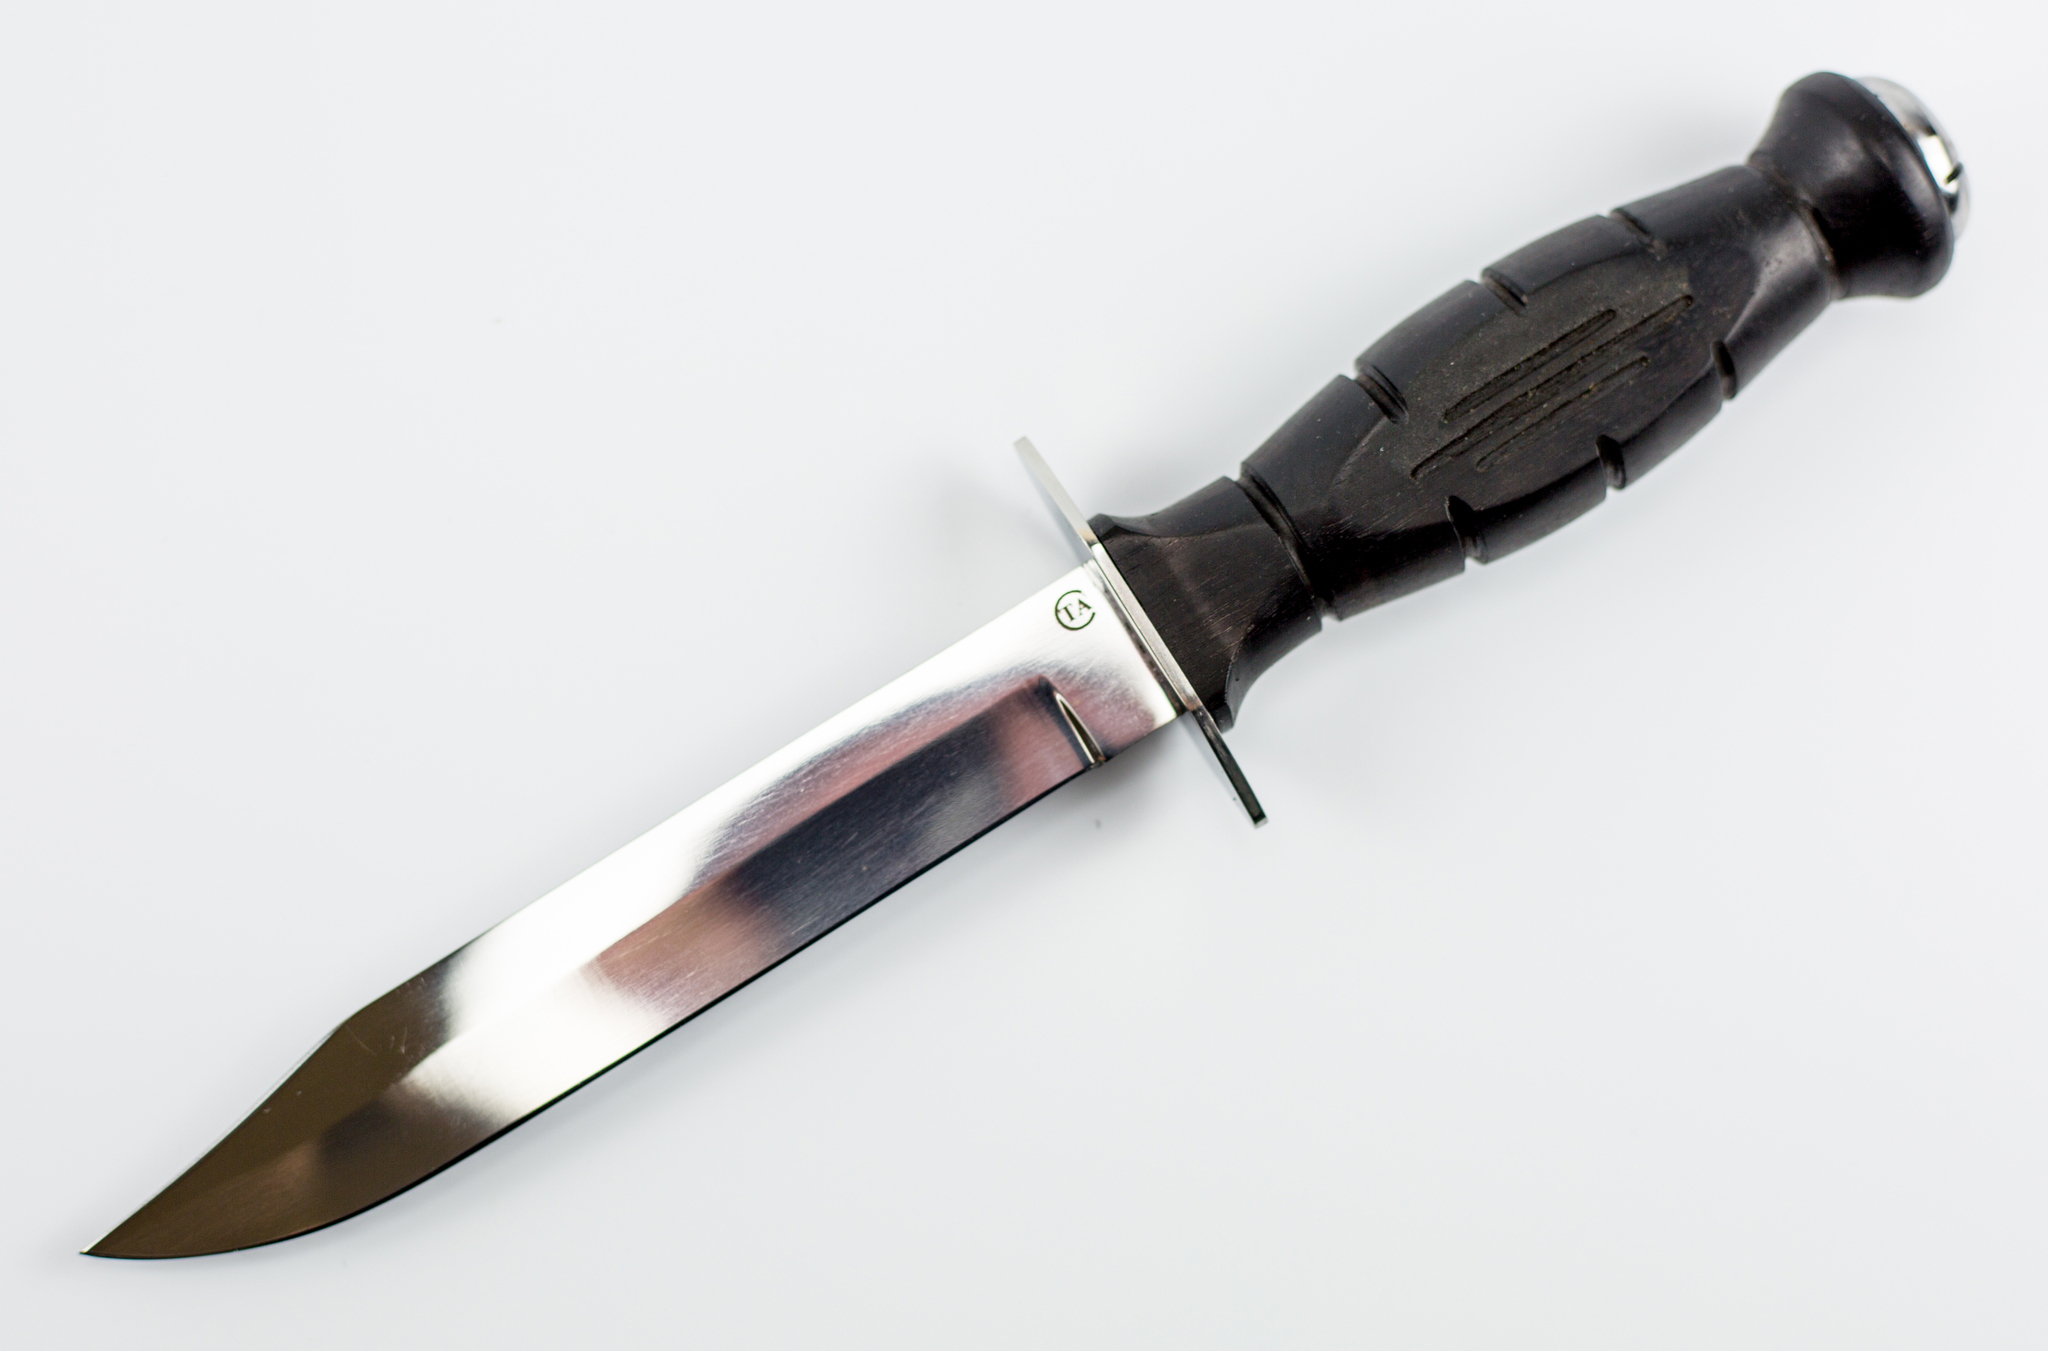 

Нож Спецназ Вишня, сталь 95Х18, резной граб